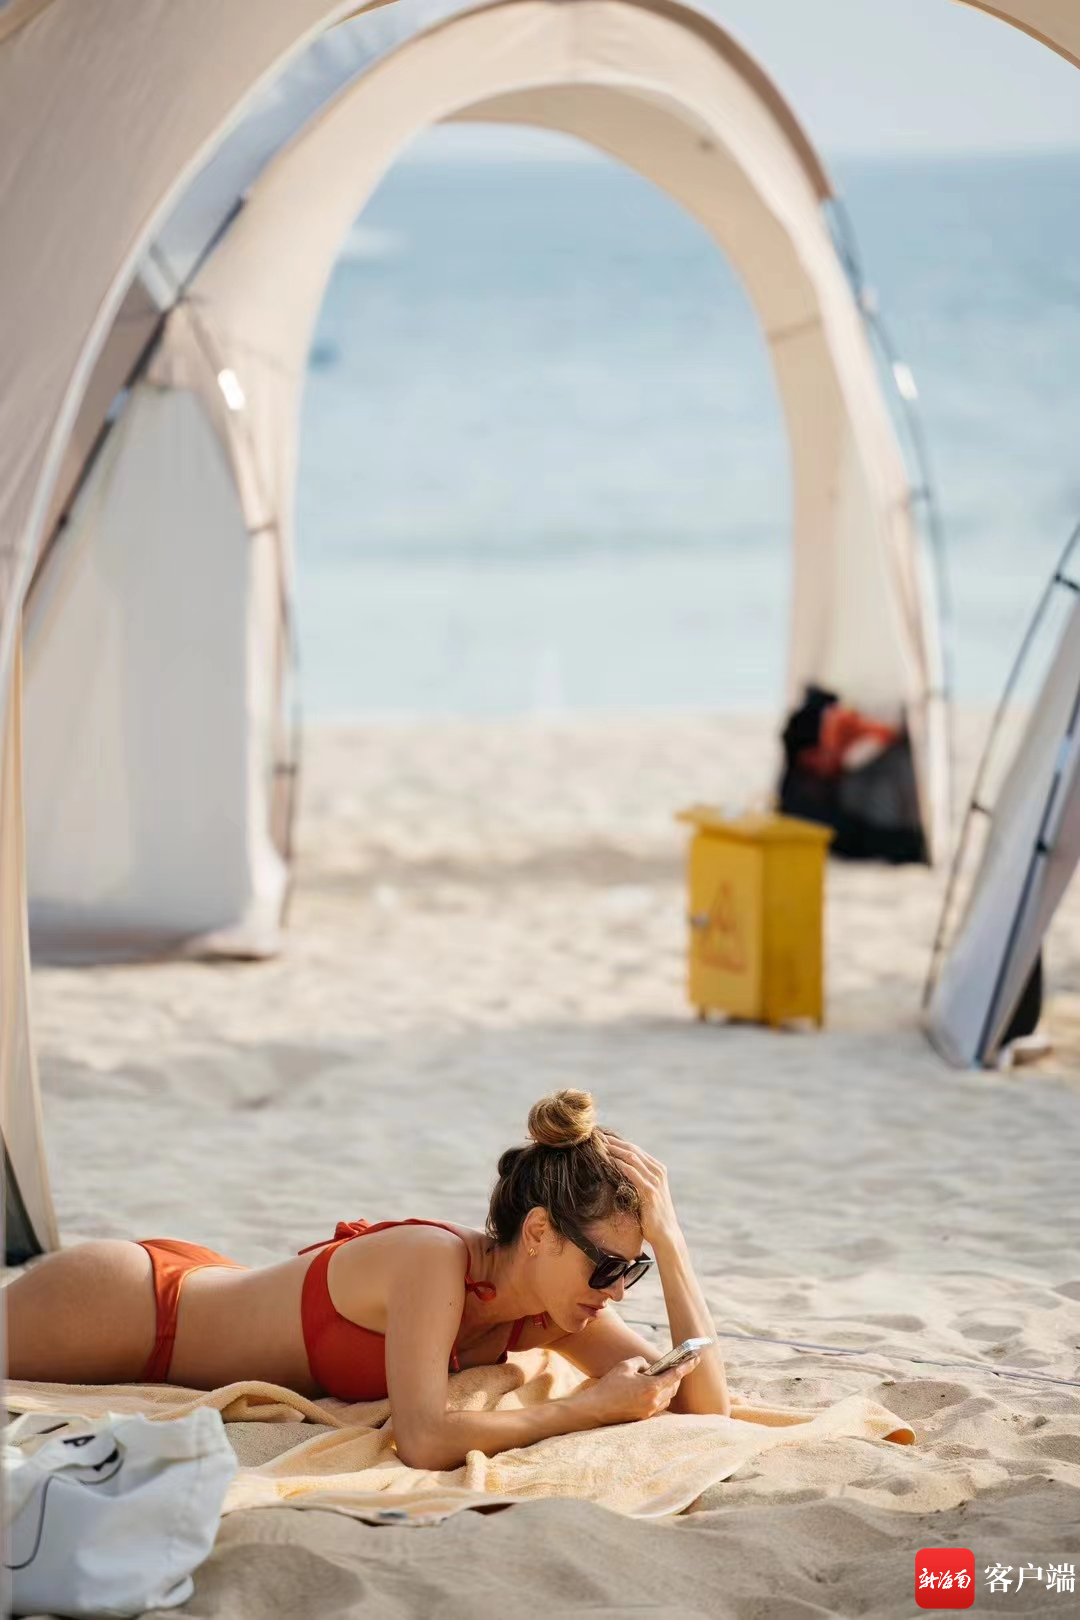 俄罗斯游客在大东海旅游区沙滩享受休闲时光。三亚旅文集团供图